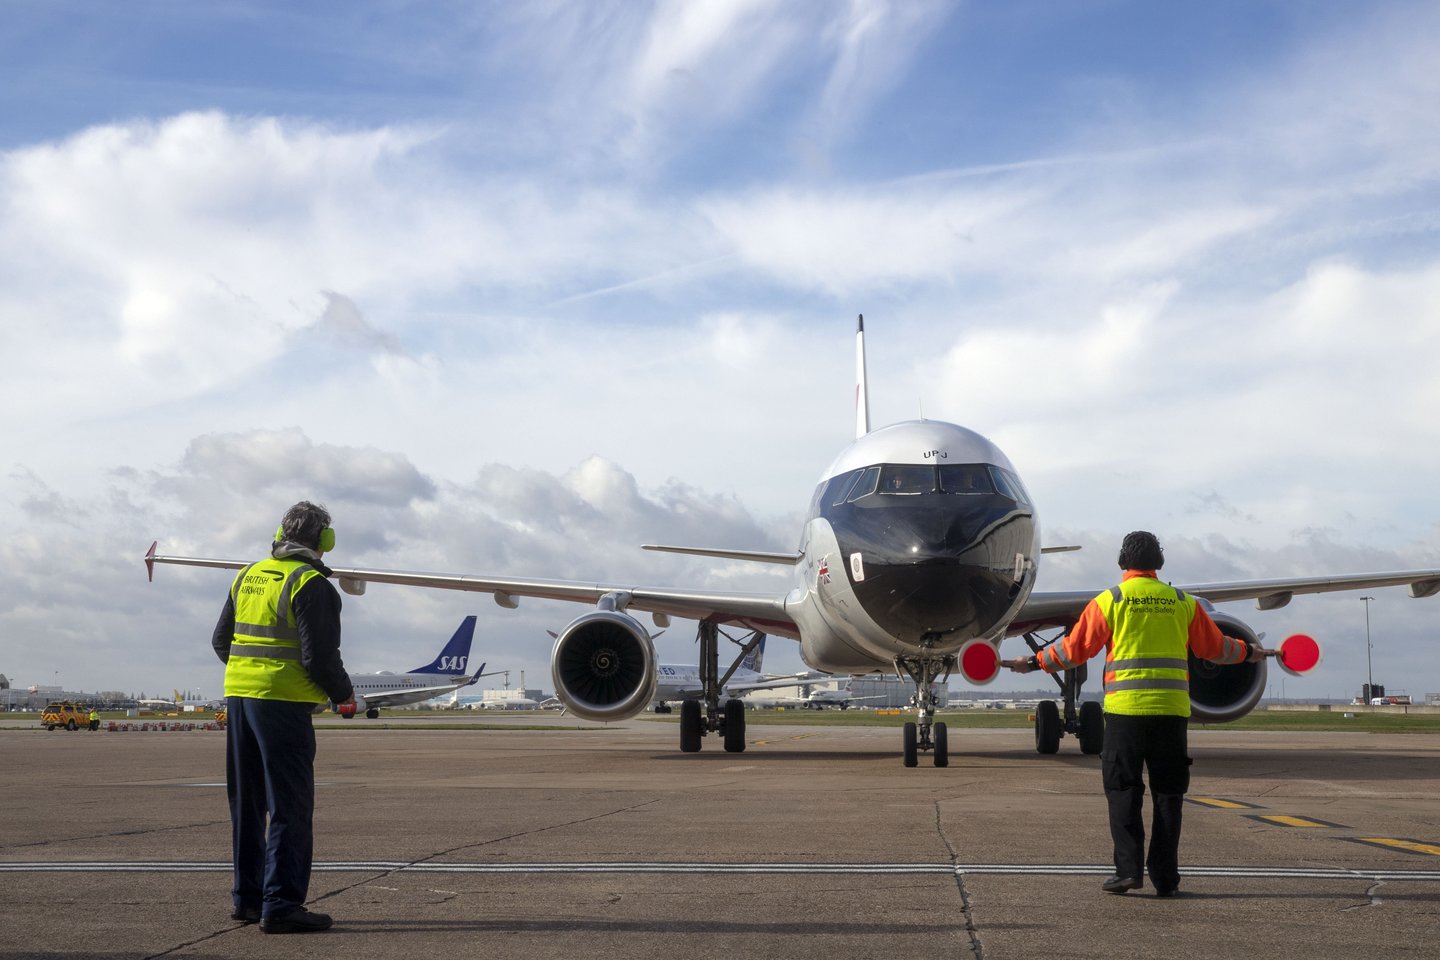 Skrydžiai bus vykdomi bendradarbiaujant su bendrove, kuri poilsiautojus skraidins „Airbus 319“ orlaiviu.<br>„Scanpix“ nuotr.